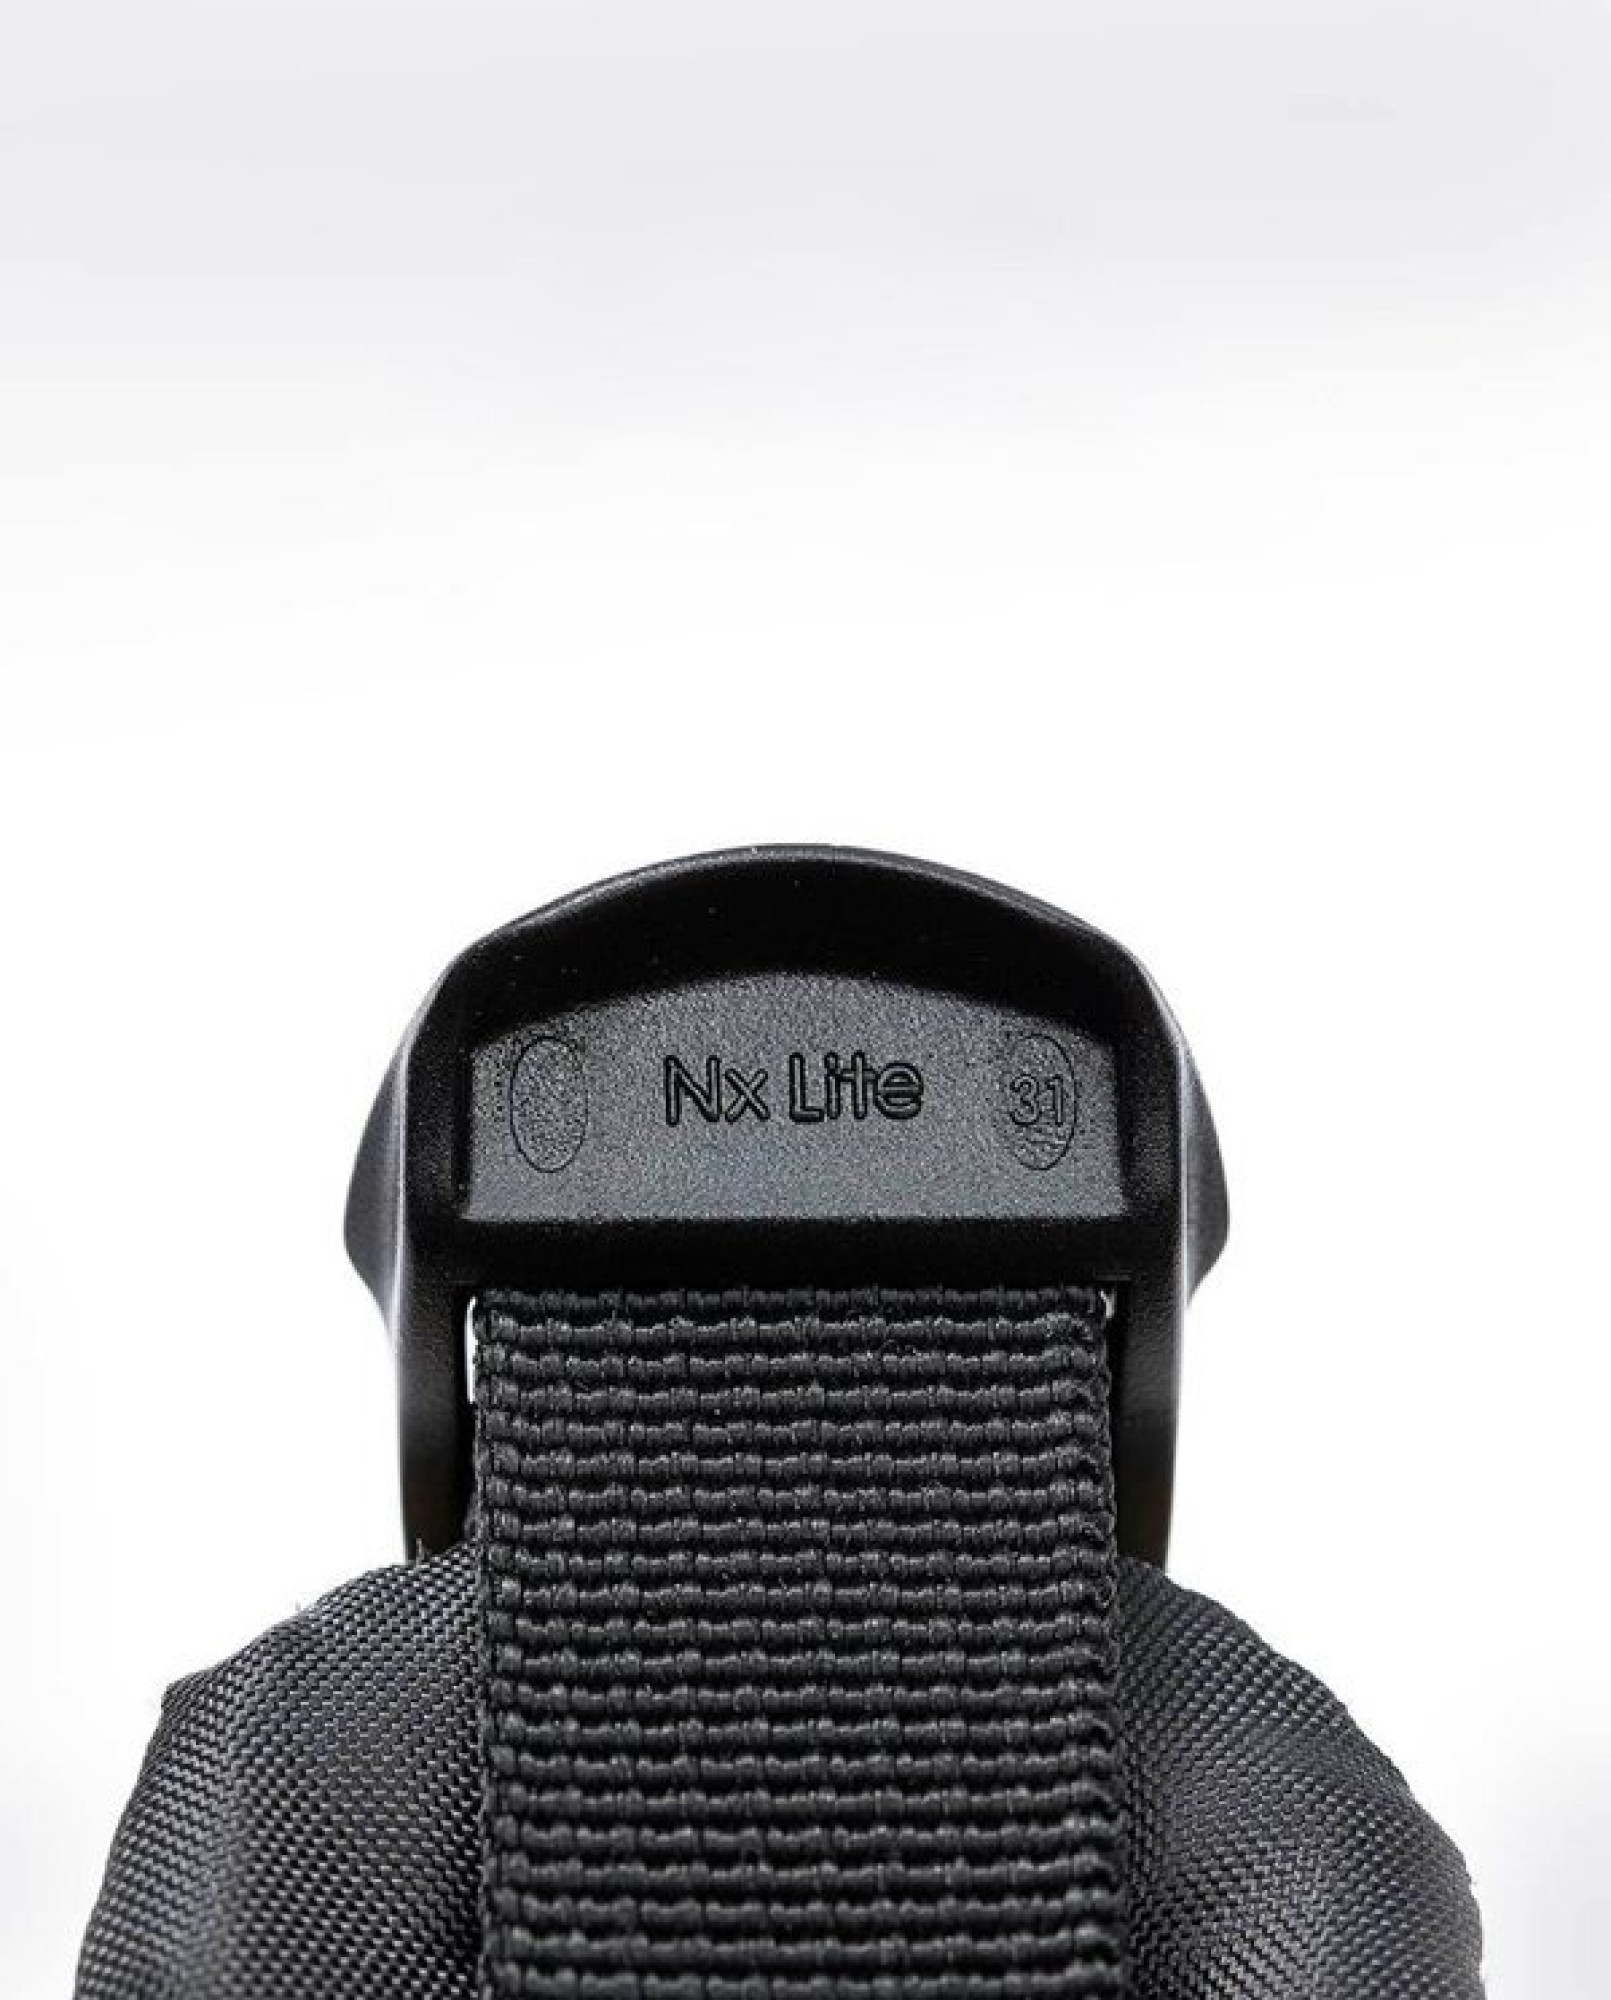 Рюкзак Xiaomi (Mi) Mini Backpack 10L (2076) (Black)